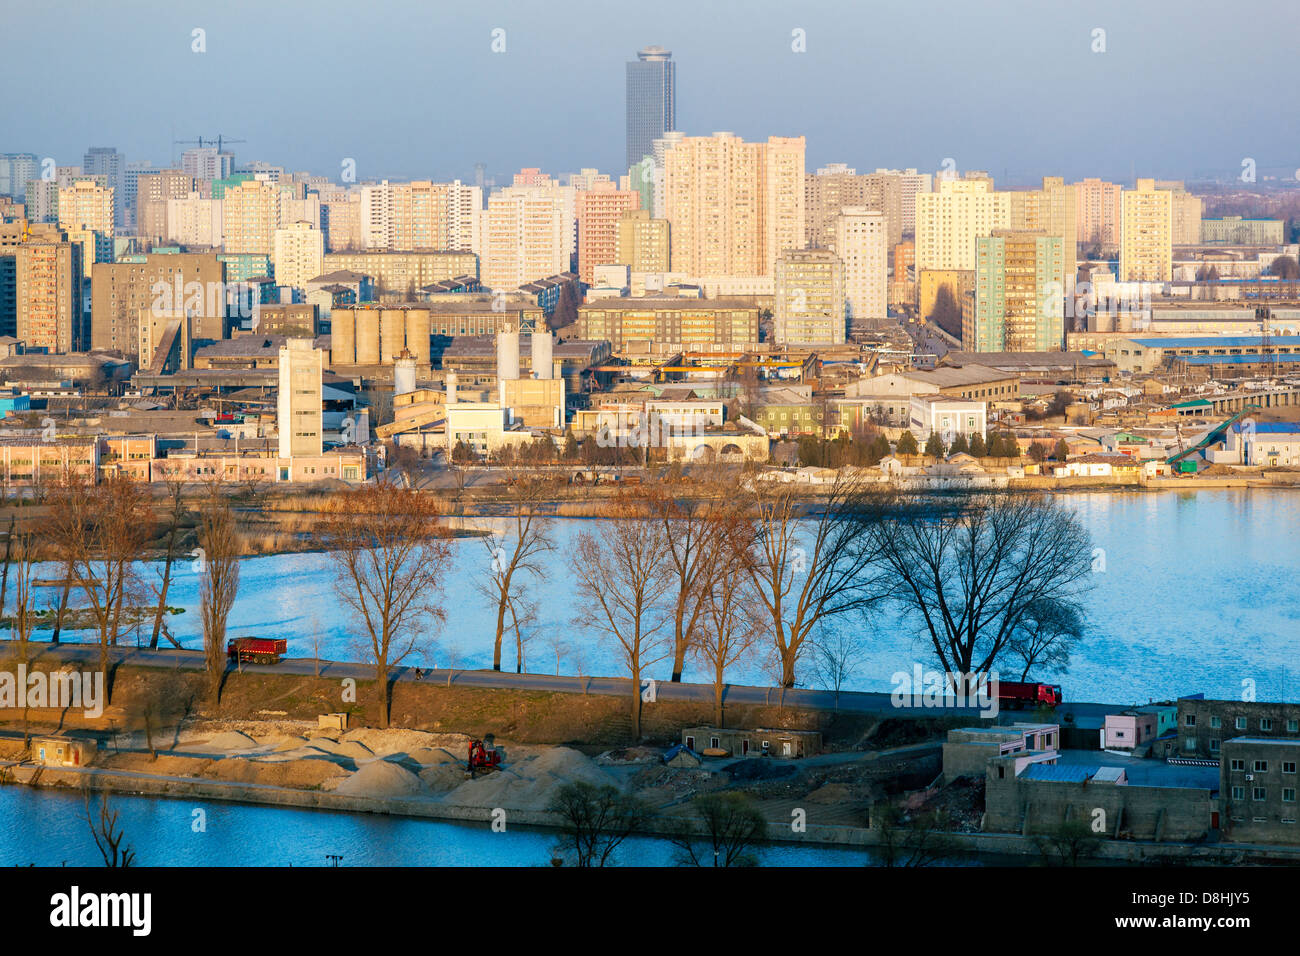 Popoli democratici la Repubblica di Corea (DPRK), Corea del Nord Pyongyang, vista in elevazione oltre lo skyline della città Foto Stock